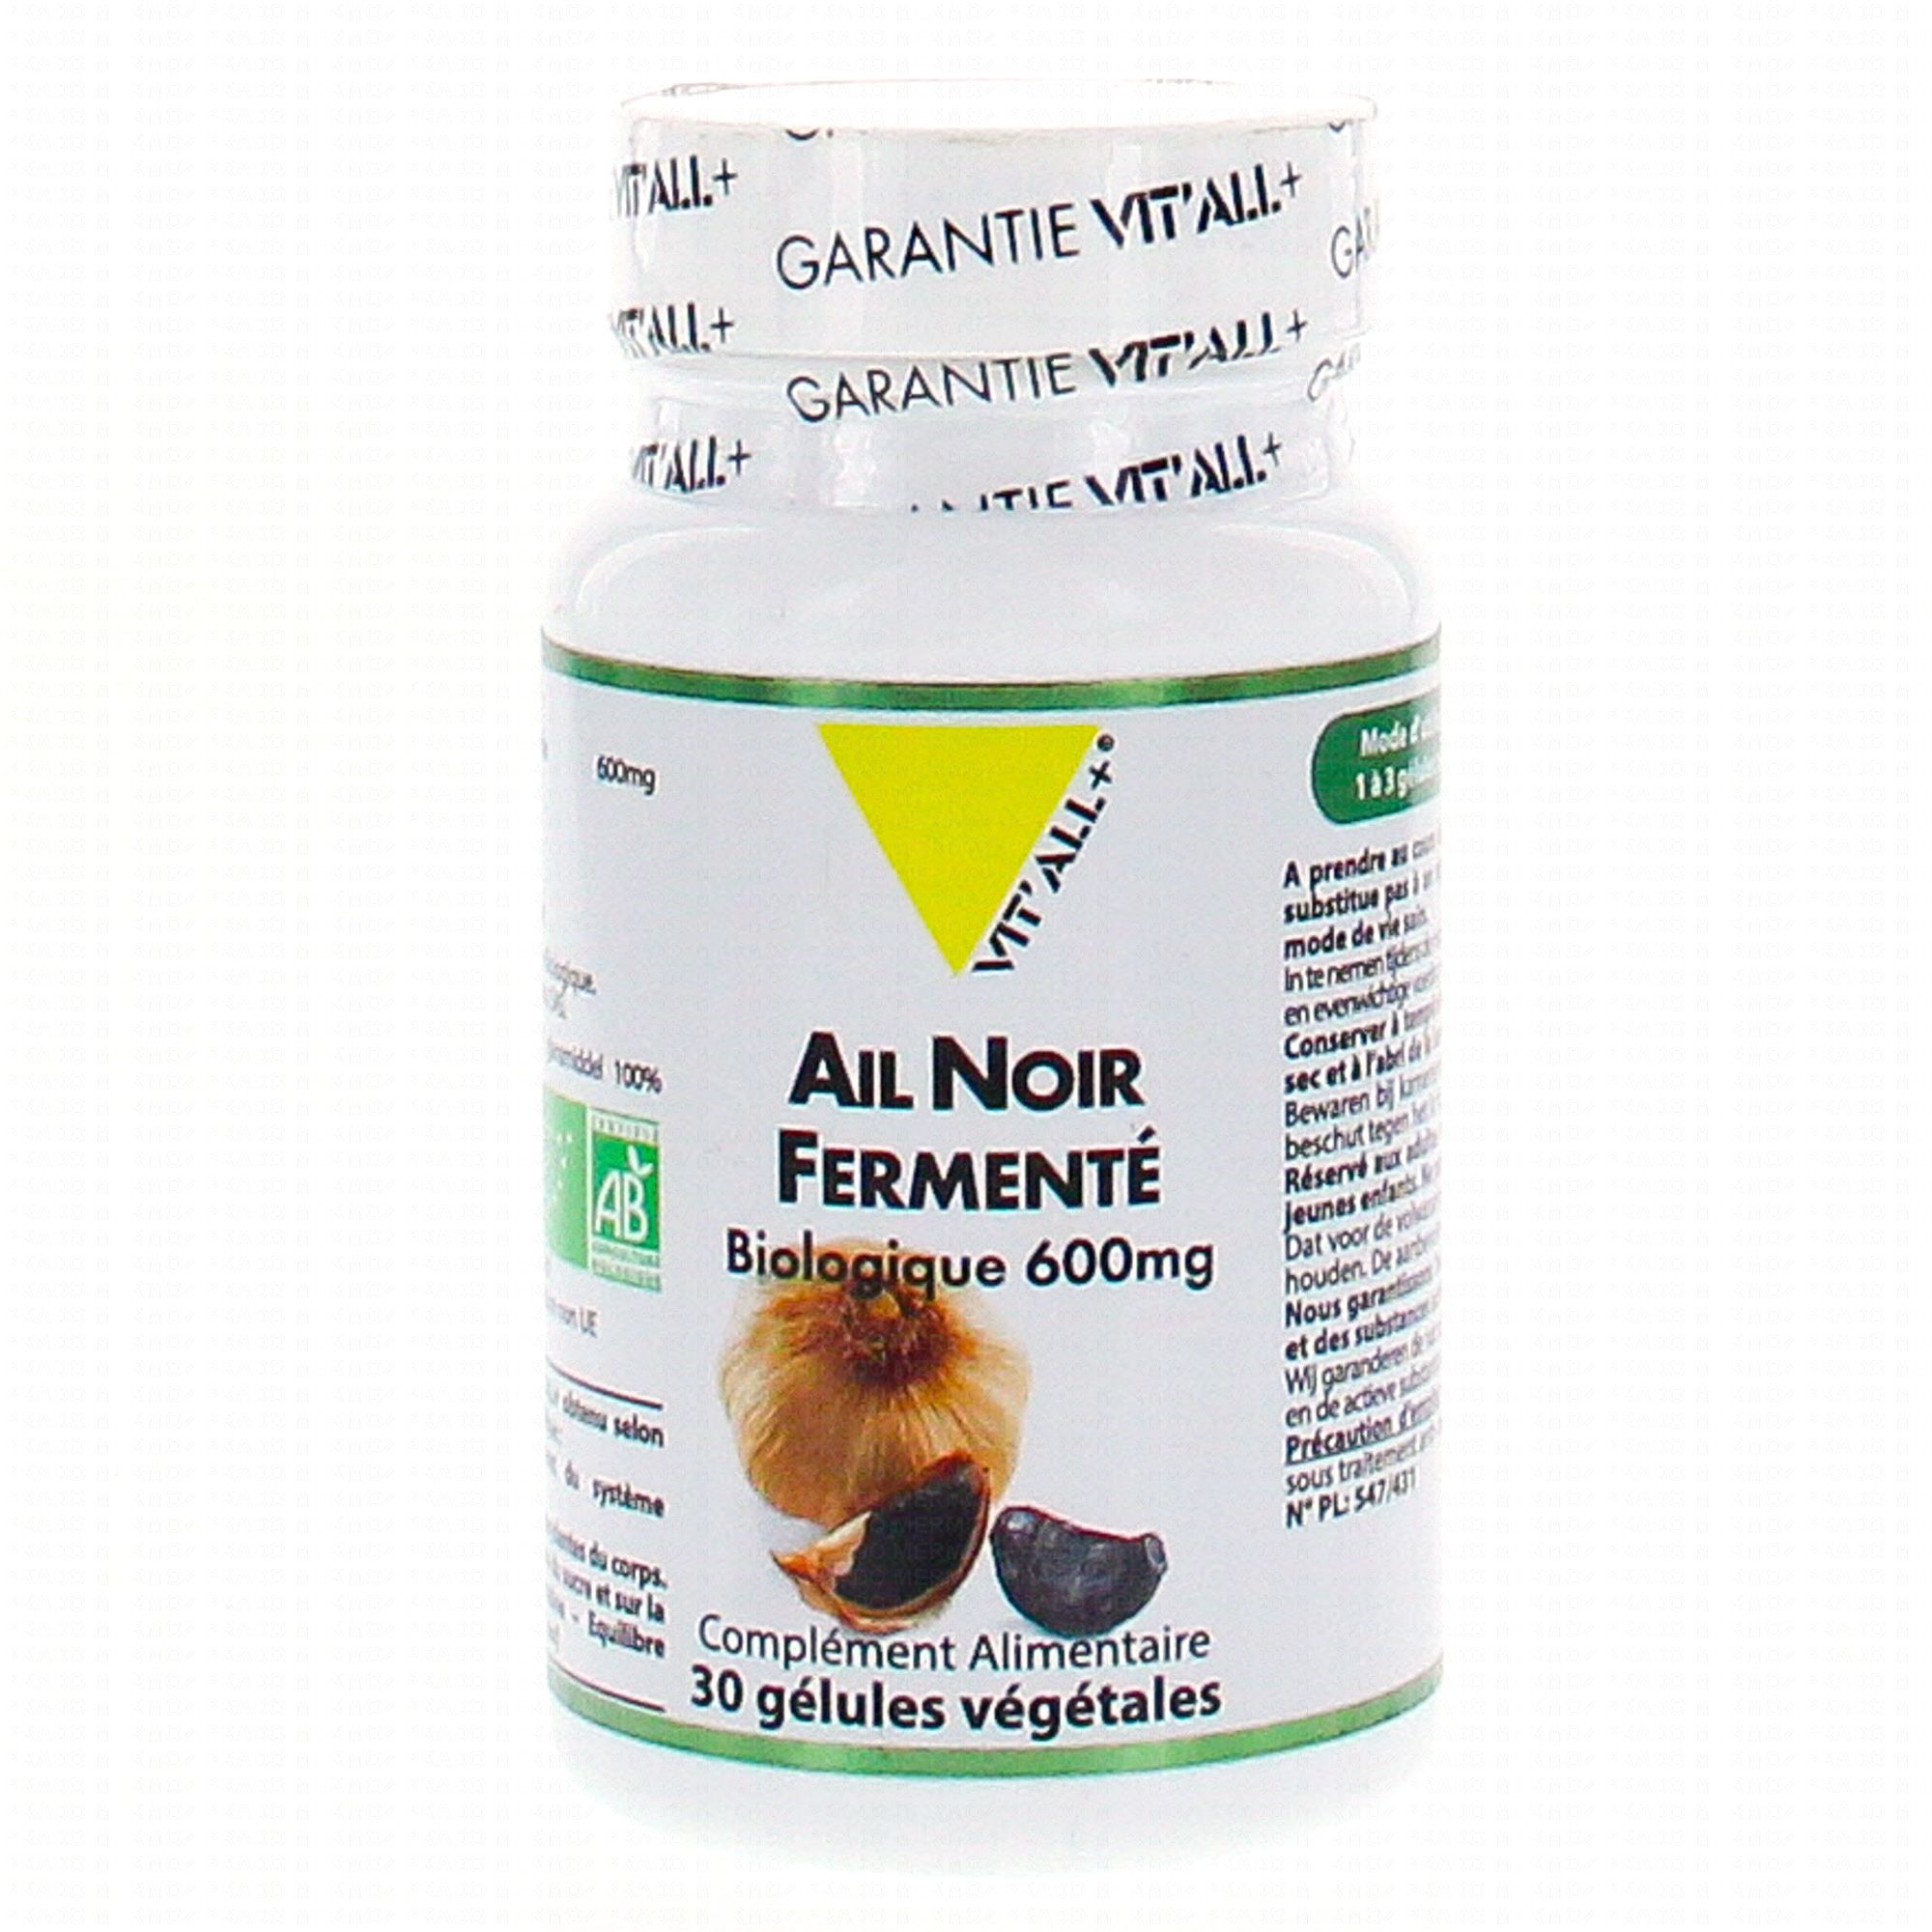 Ail noir fermenté Bio - Défenses immunitaires 30 gélules végétales -  Vit'all+